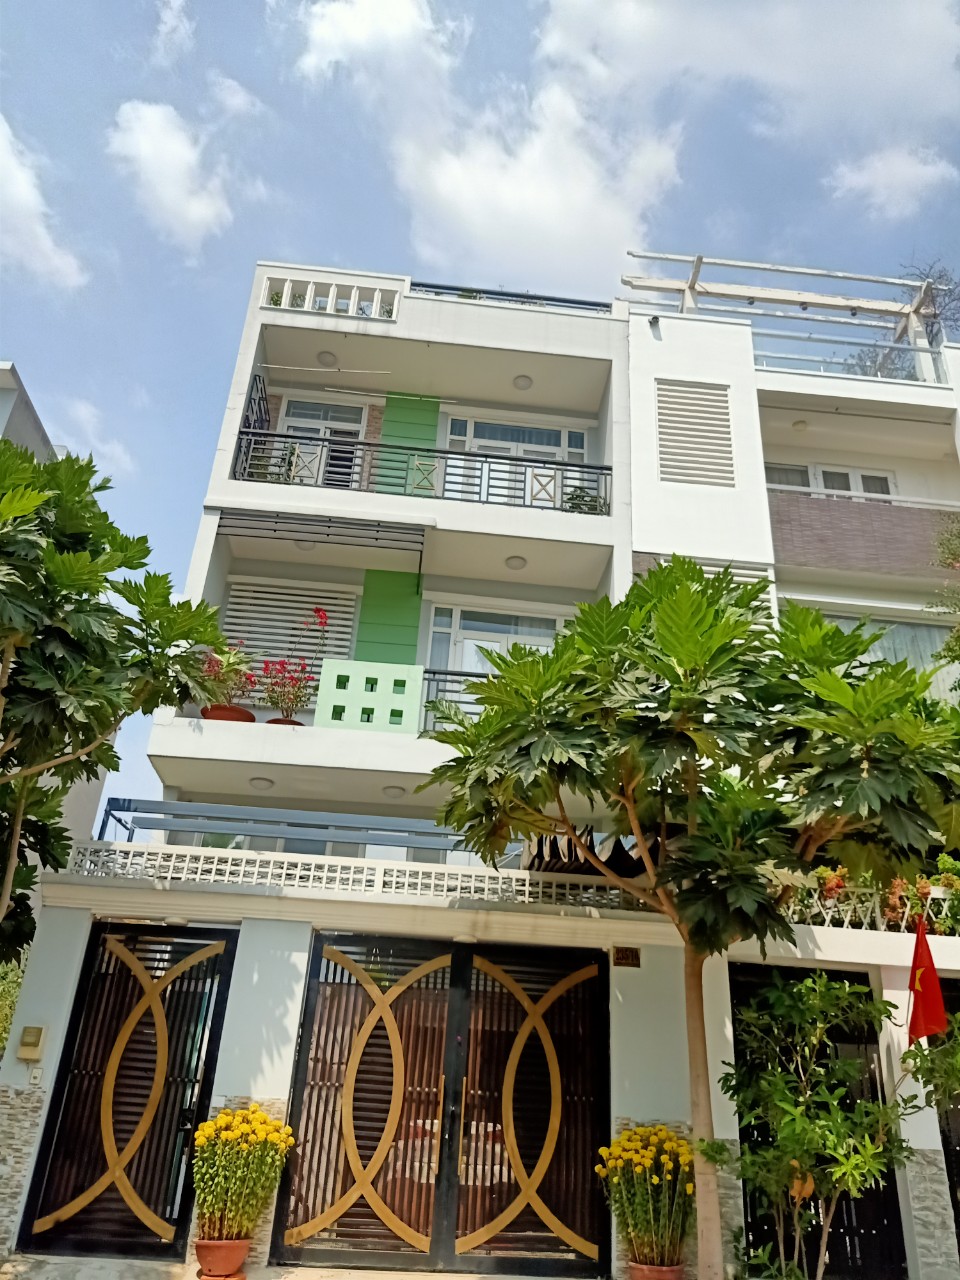 Bán nhà khu dân cư Huy Hoàng Maiđường Nguyễn Oanh, GV, DT 4x19m, 3 lầu, đường 7m